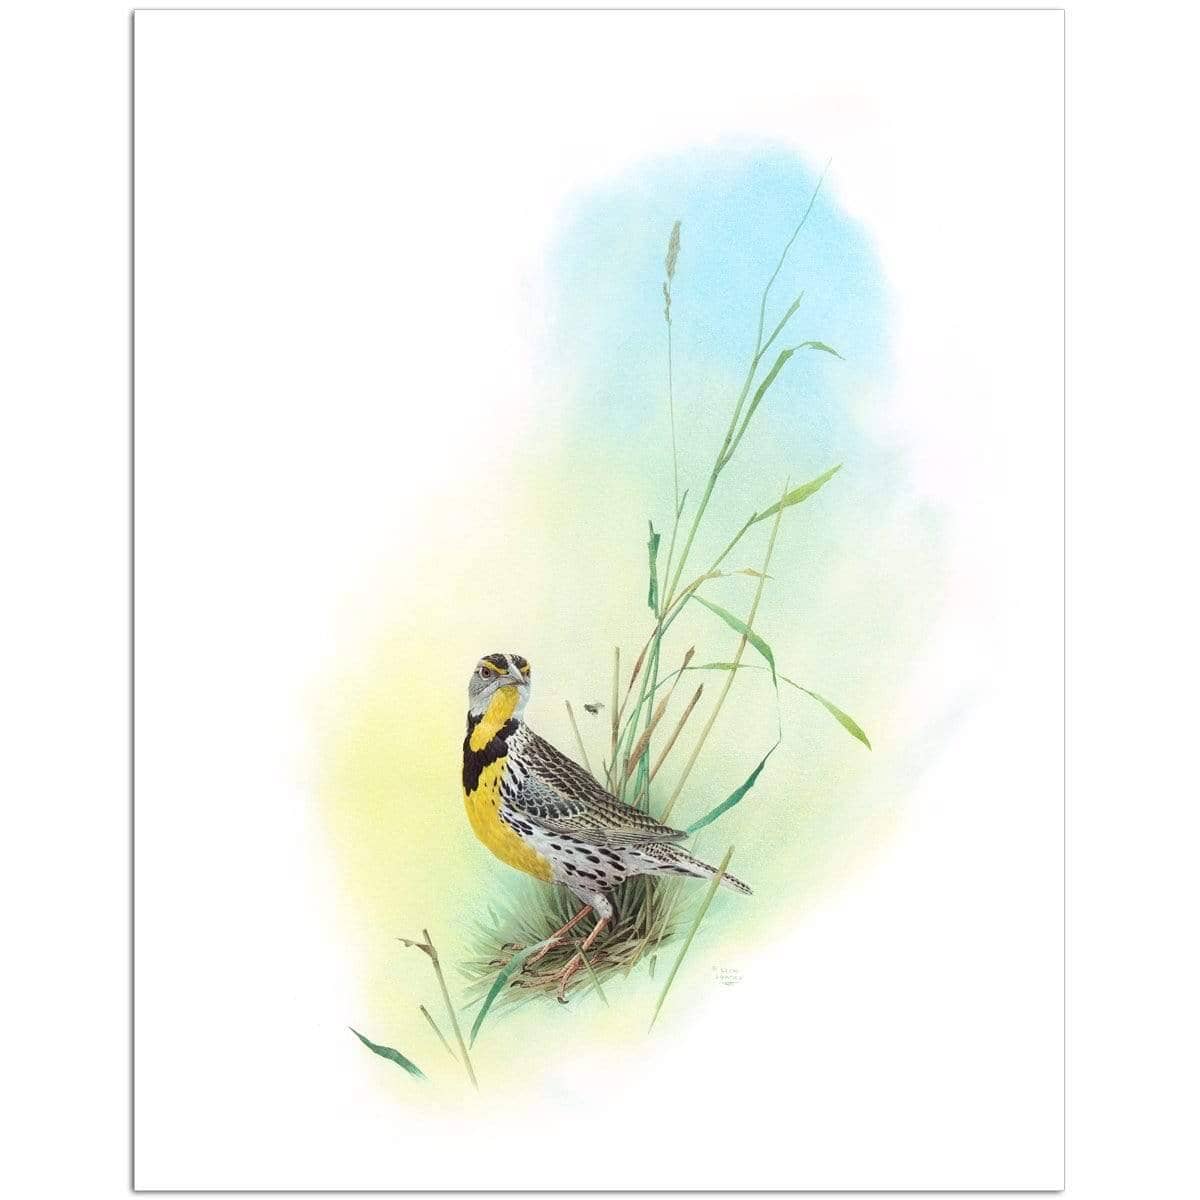 Meadow Lark - Art Print | Artwork by Glen Loates